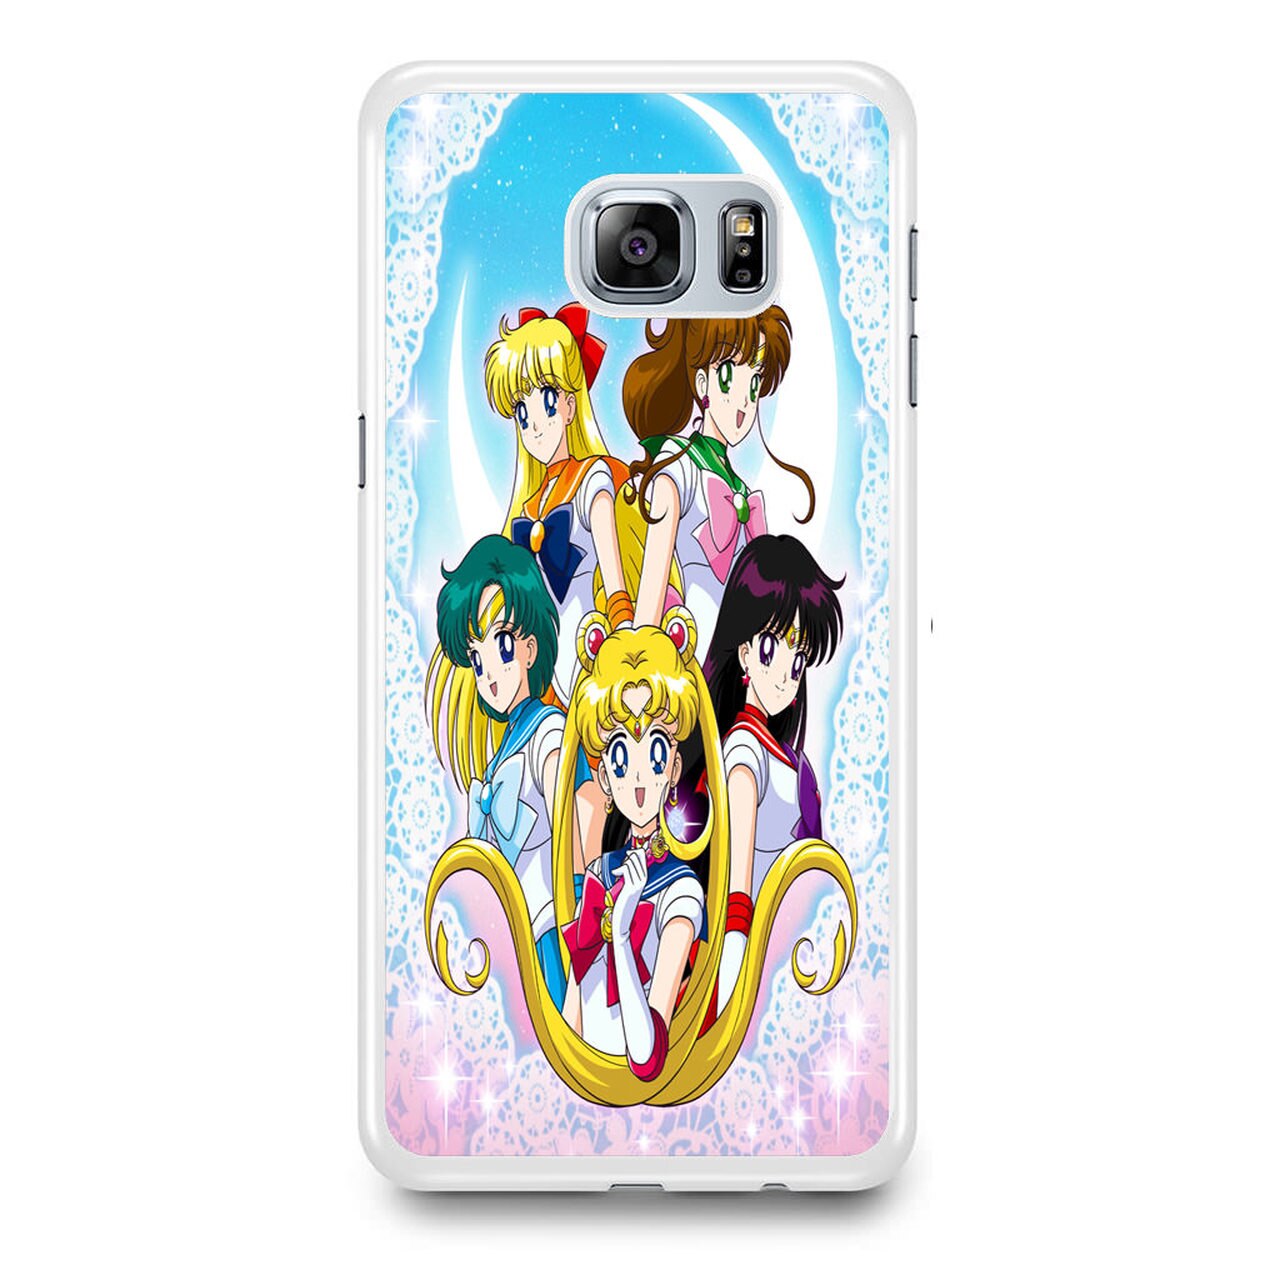 Cute Iphone 8 Case - HD Wallpaper 